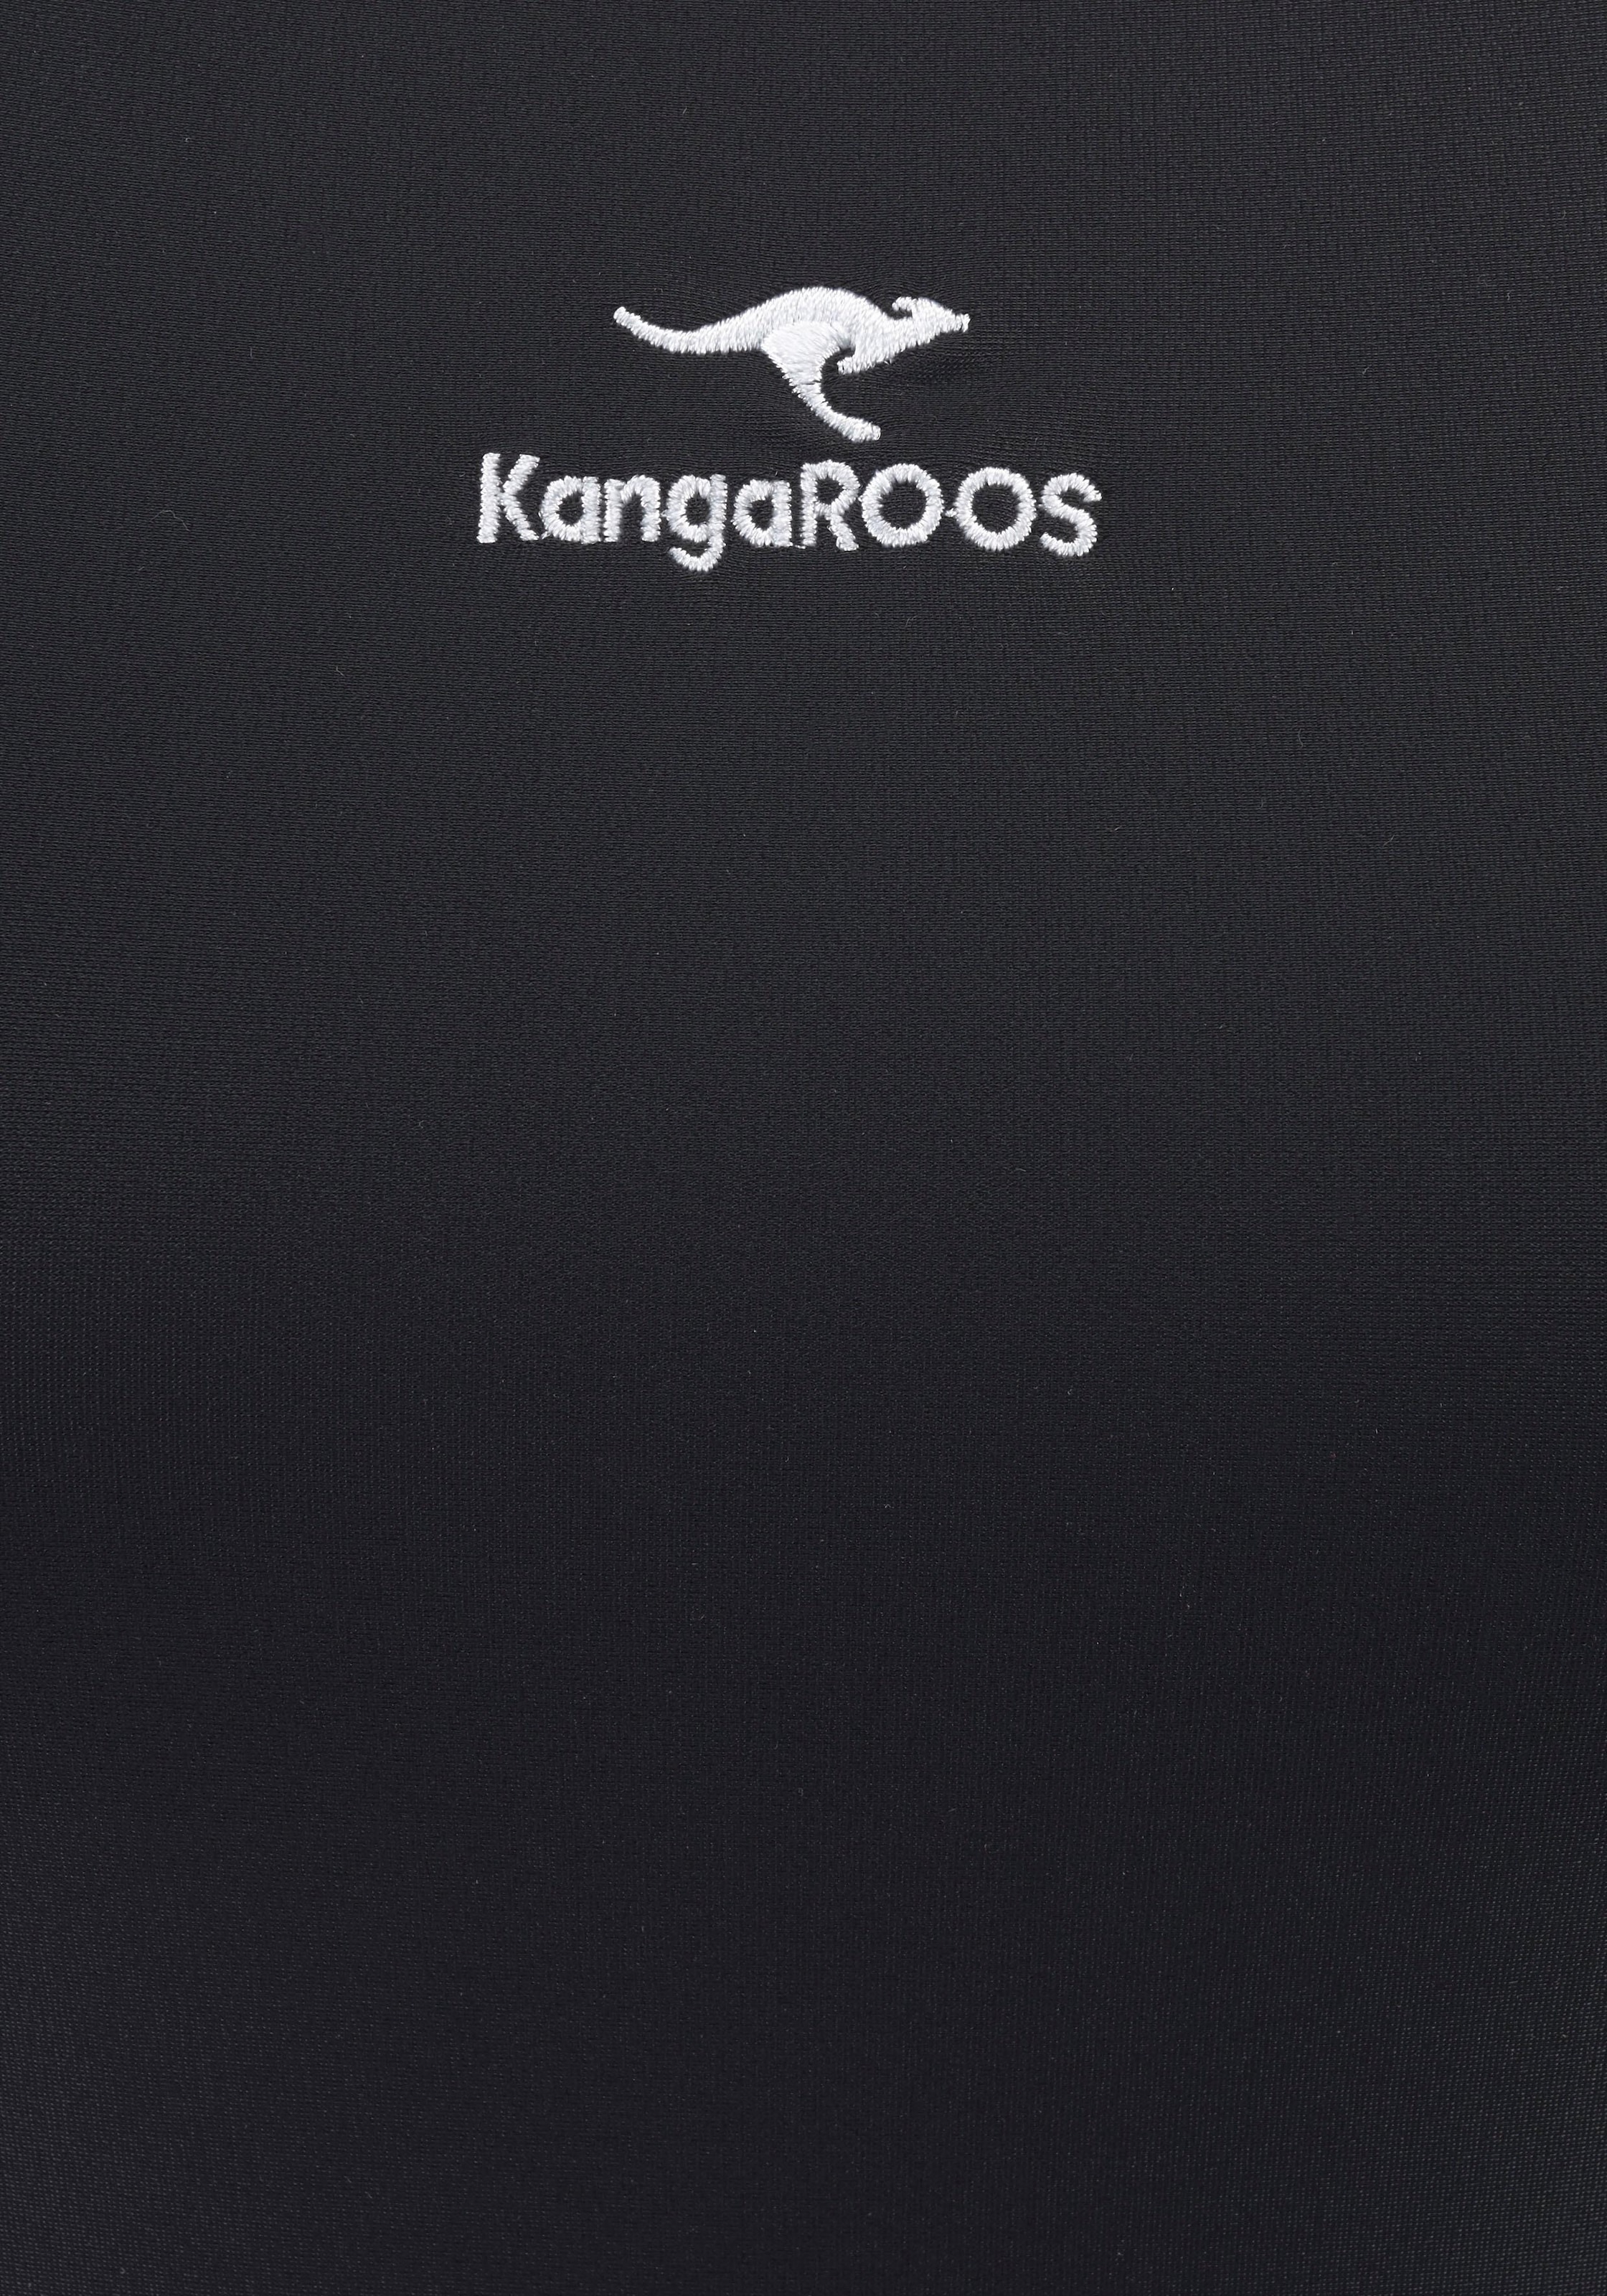 dezentem Logoprint bequem Badeanzug, KangaROOS kaufen mit